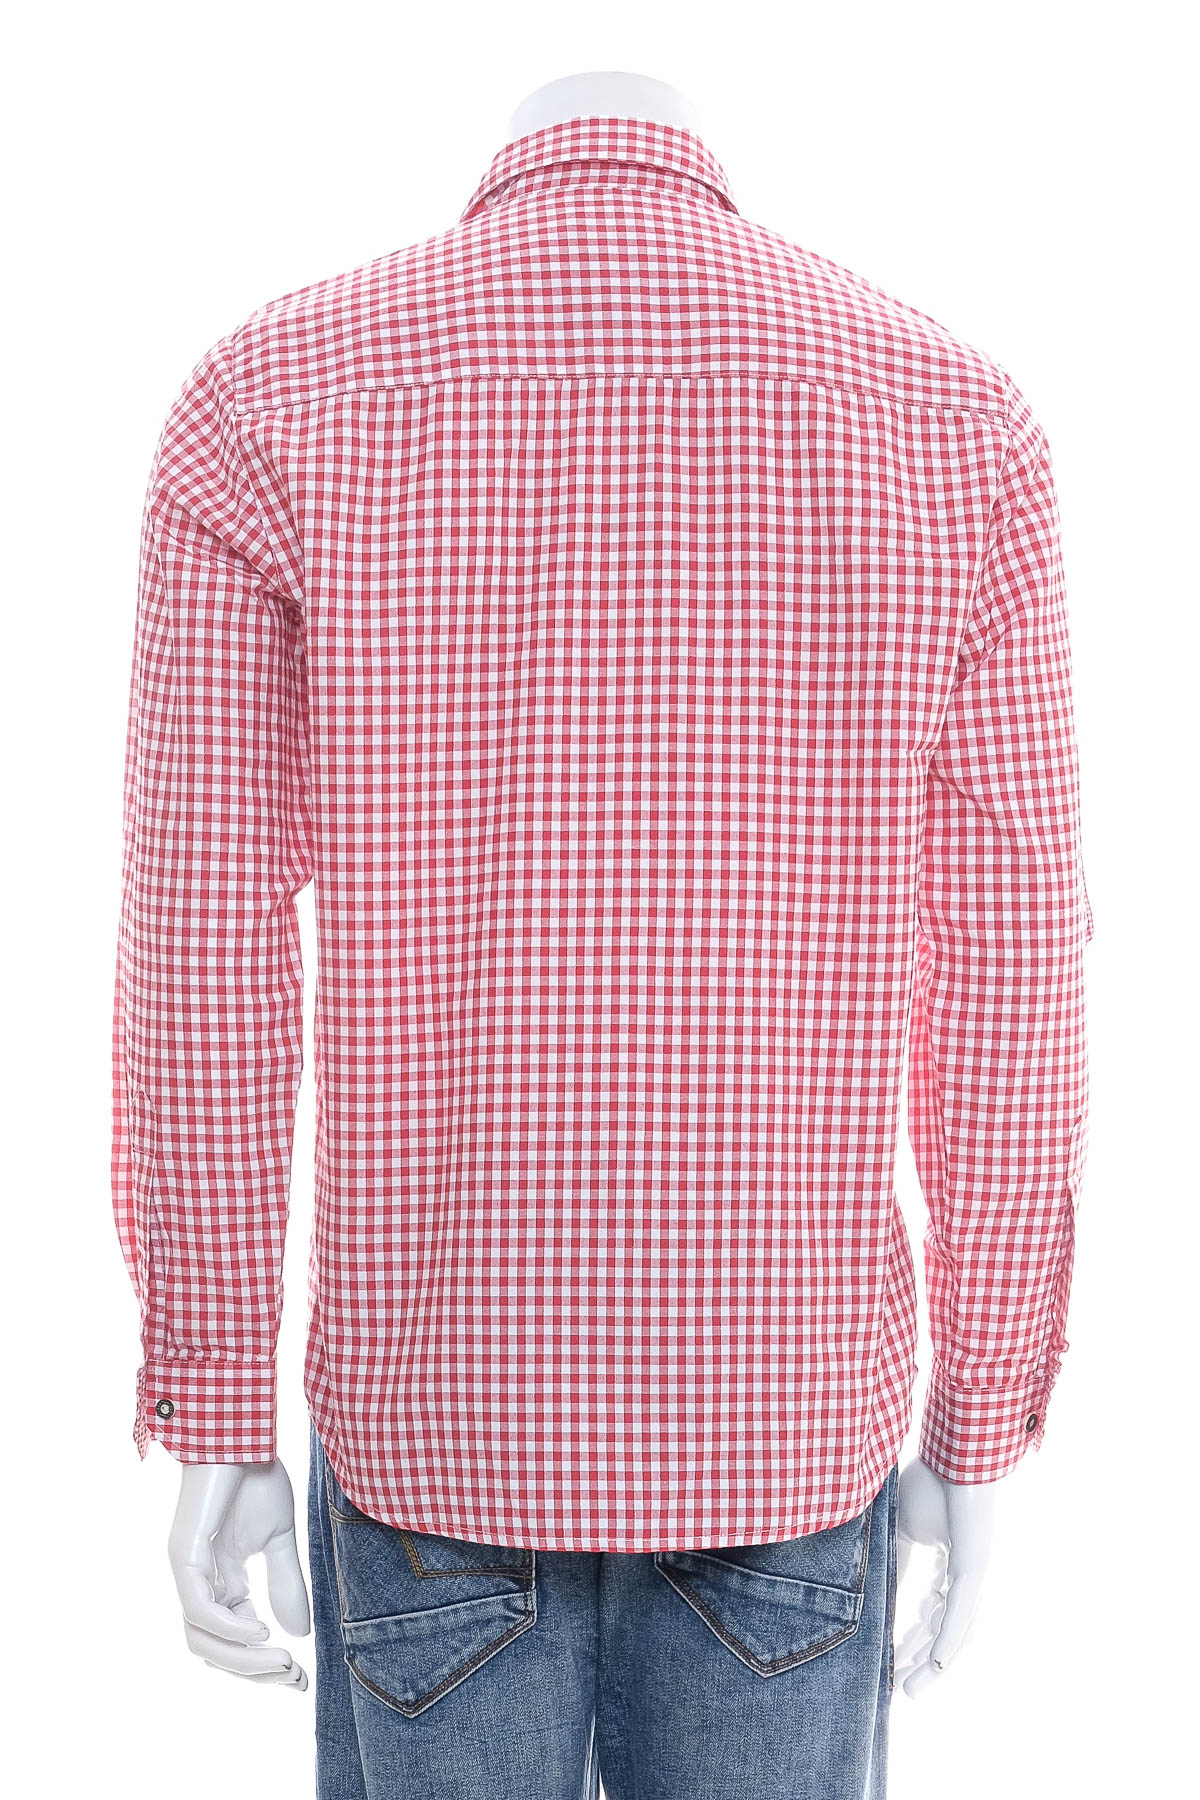 Ανδρικό πουκάμισο - STOCKERPOINT - 1